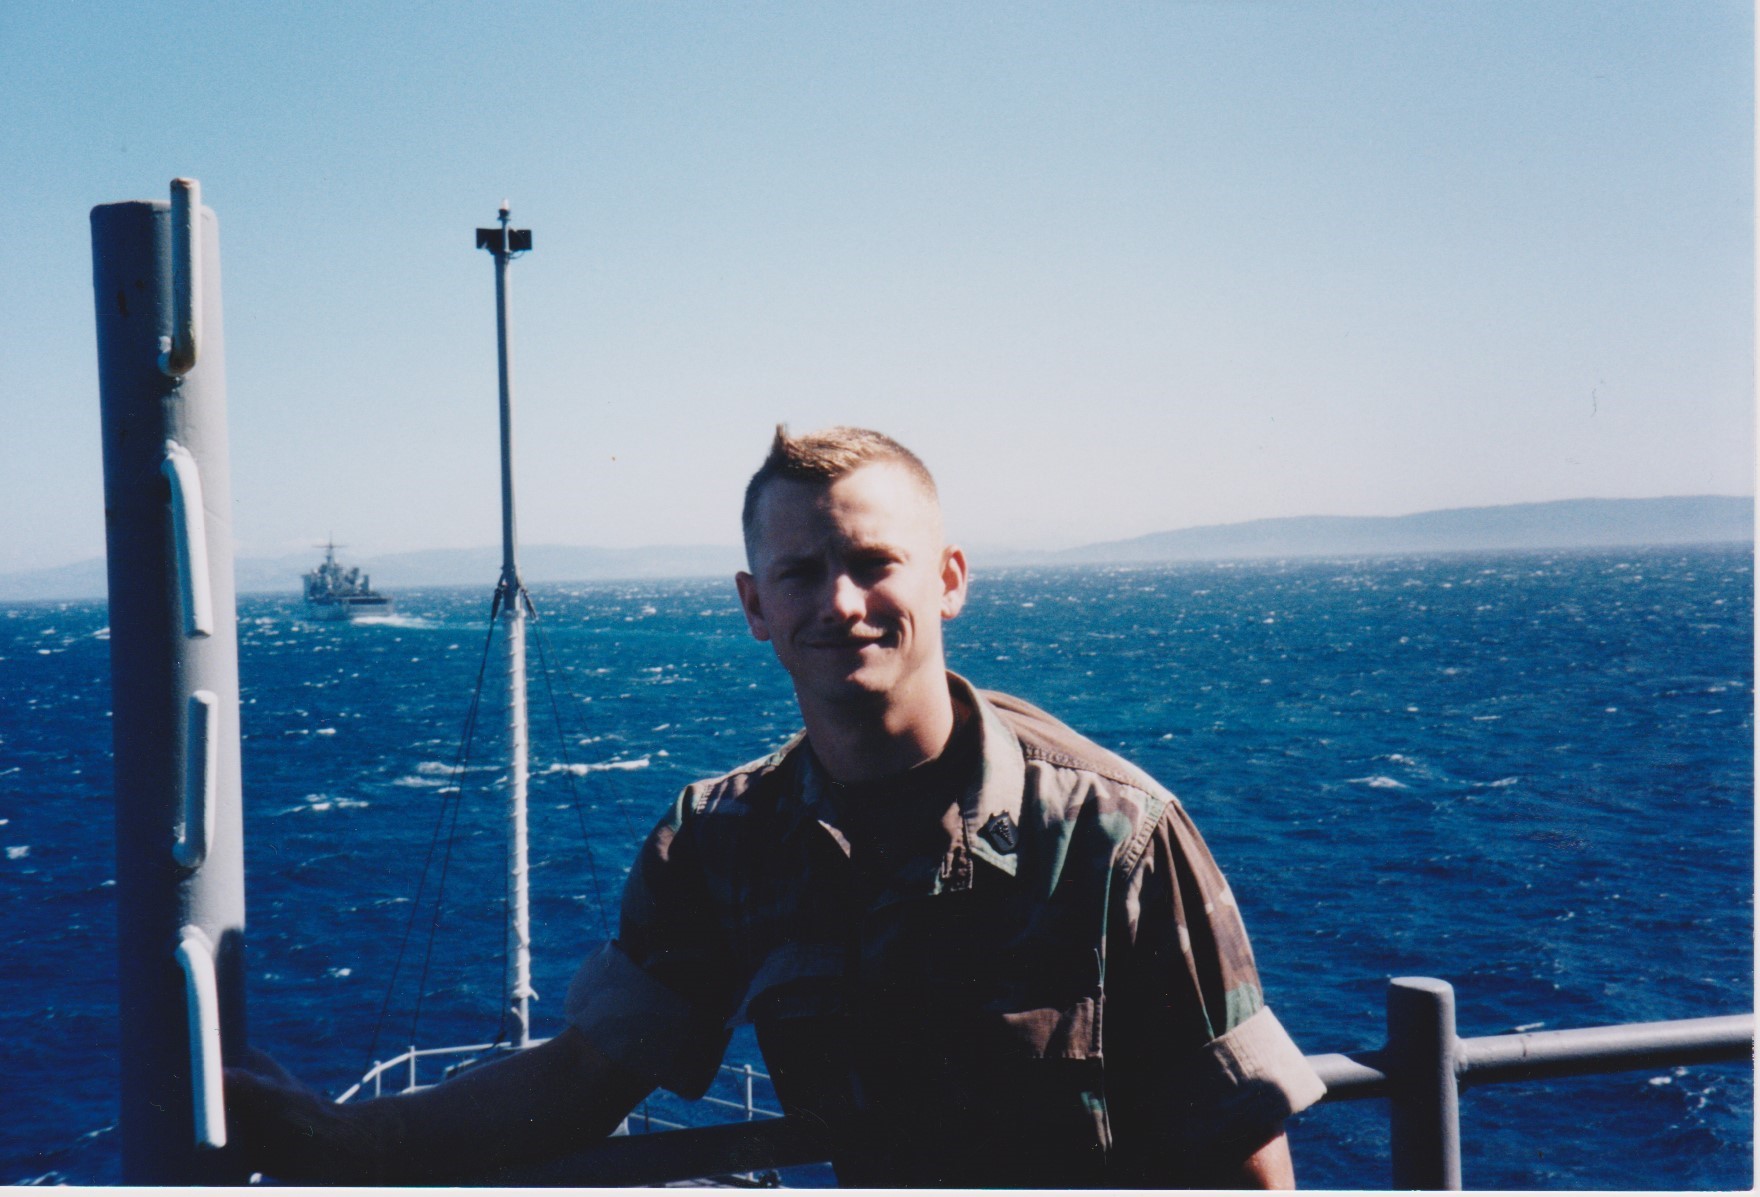 USS Oak Hill: Med Float
1997.